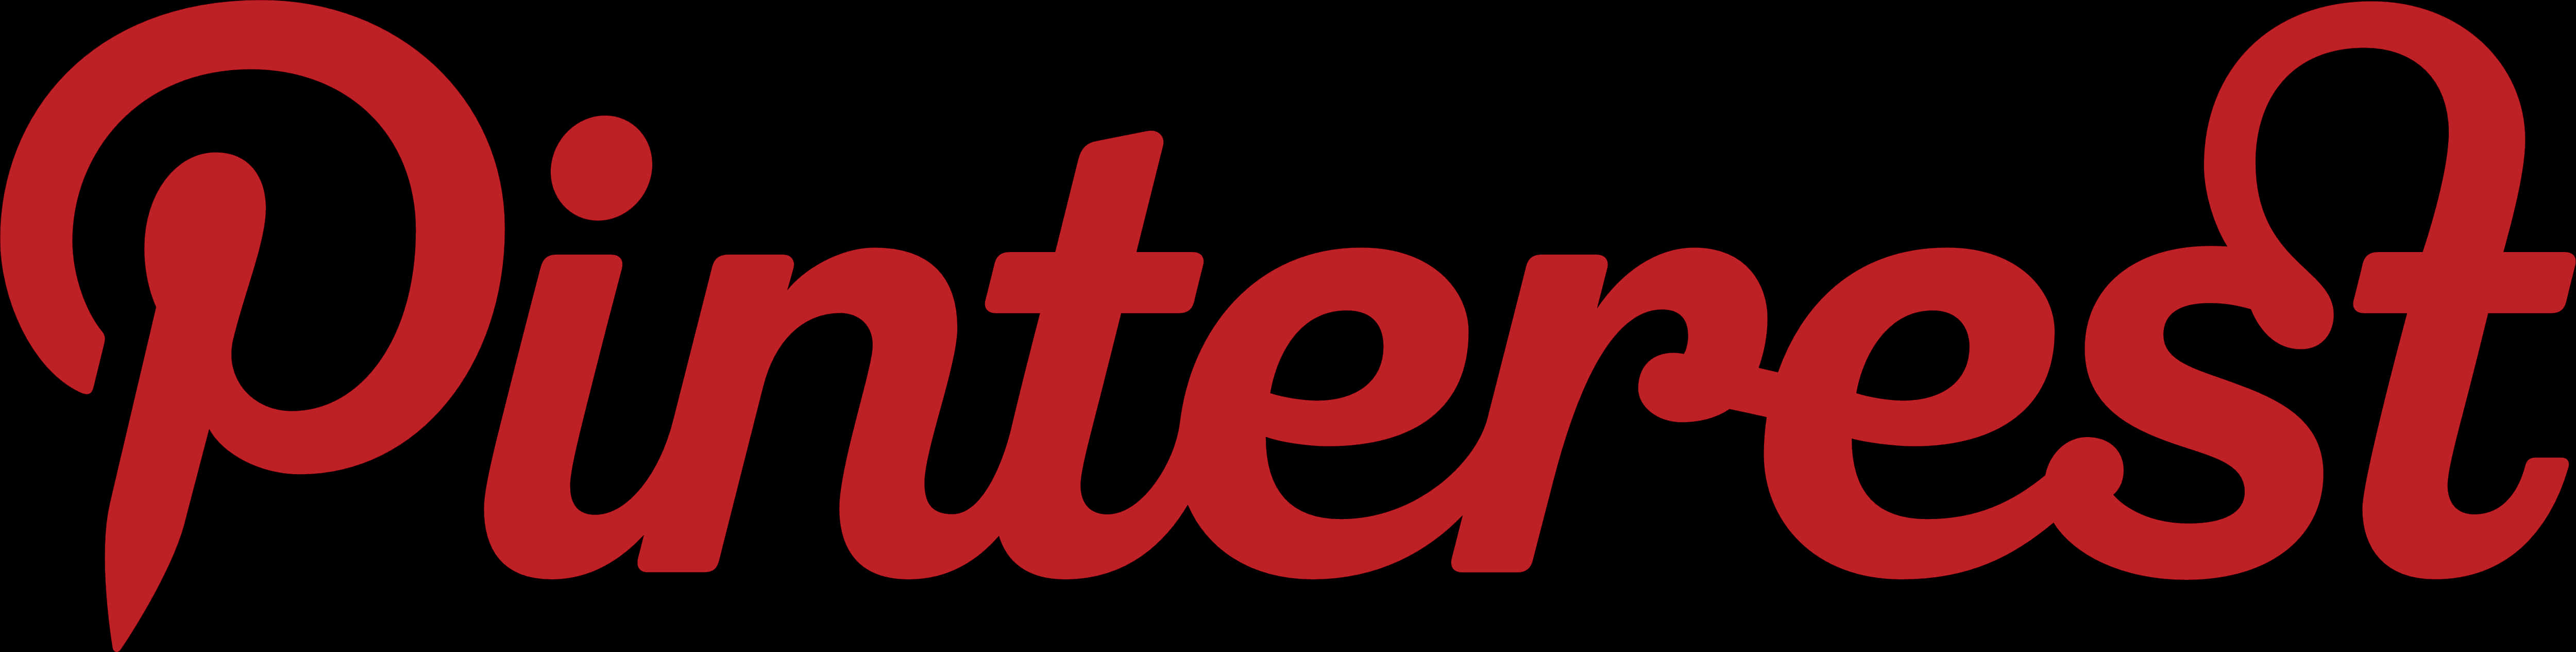 Pinterest Logo Red Script PNG image